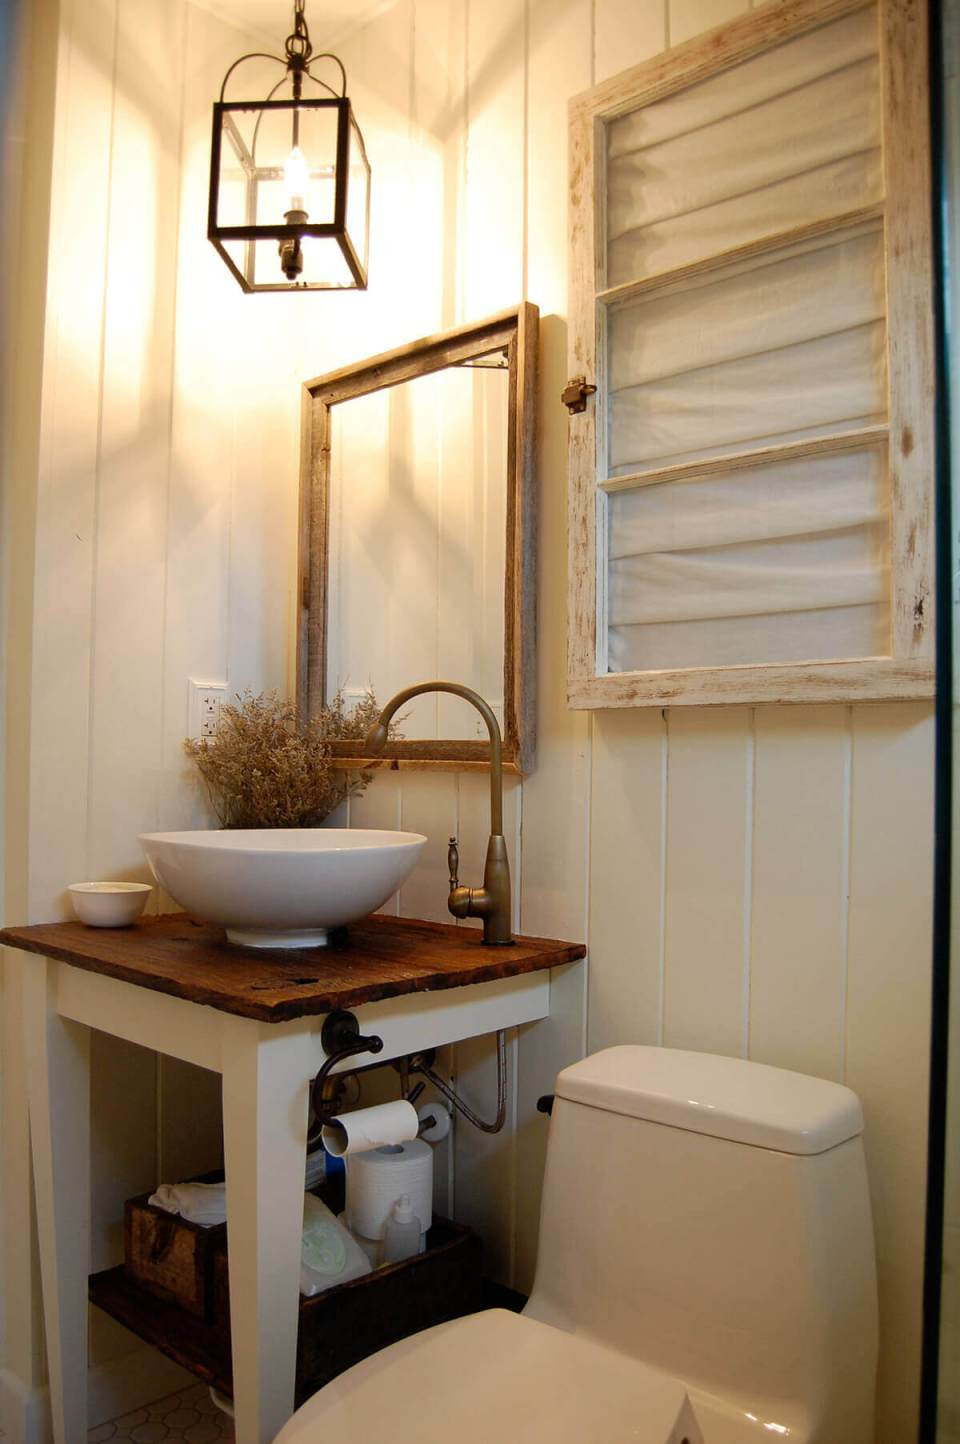 Diy Rustic Bathroom Vanity
 31 Impressive DIY Rustic Farmhouse Bathroom Vanity Ideas